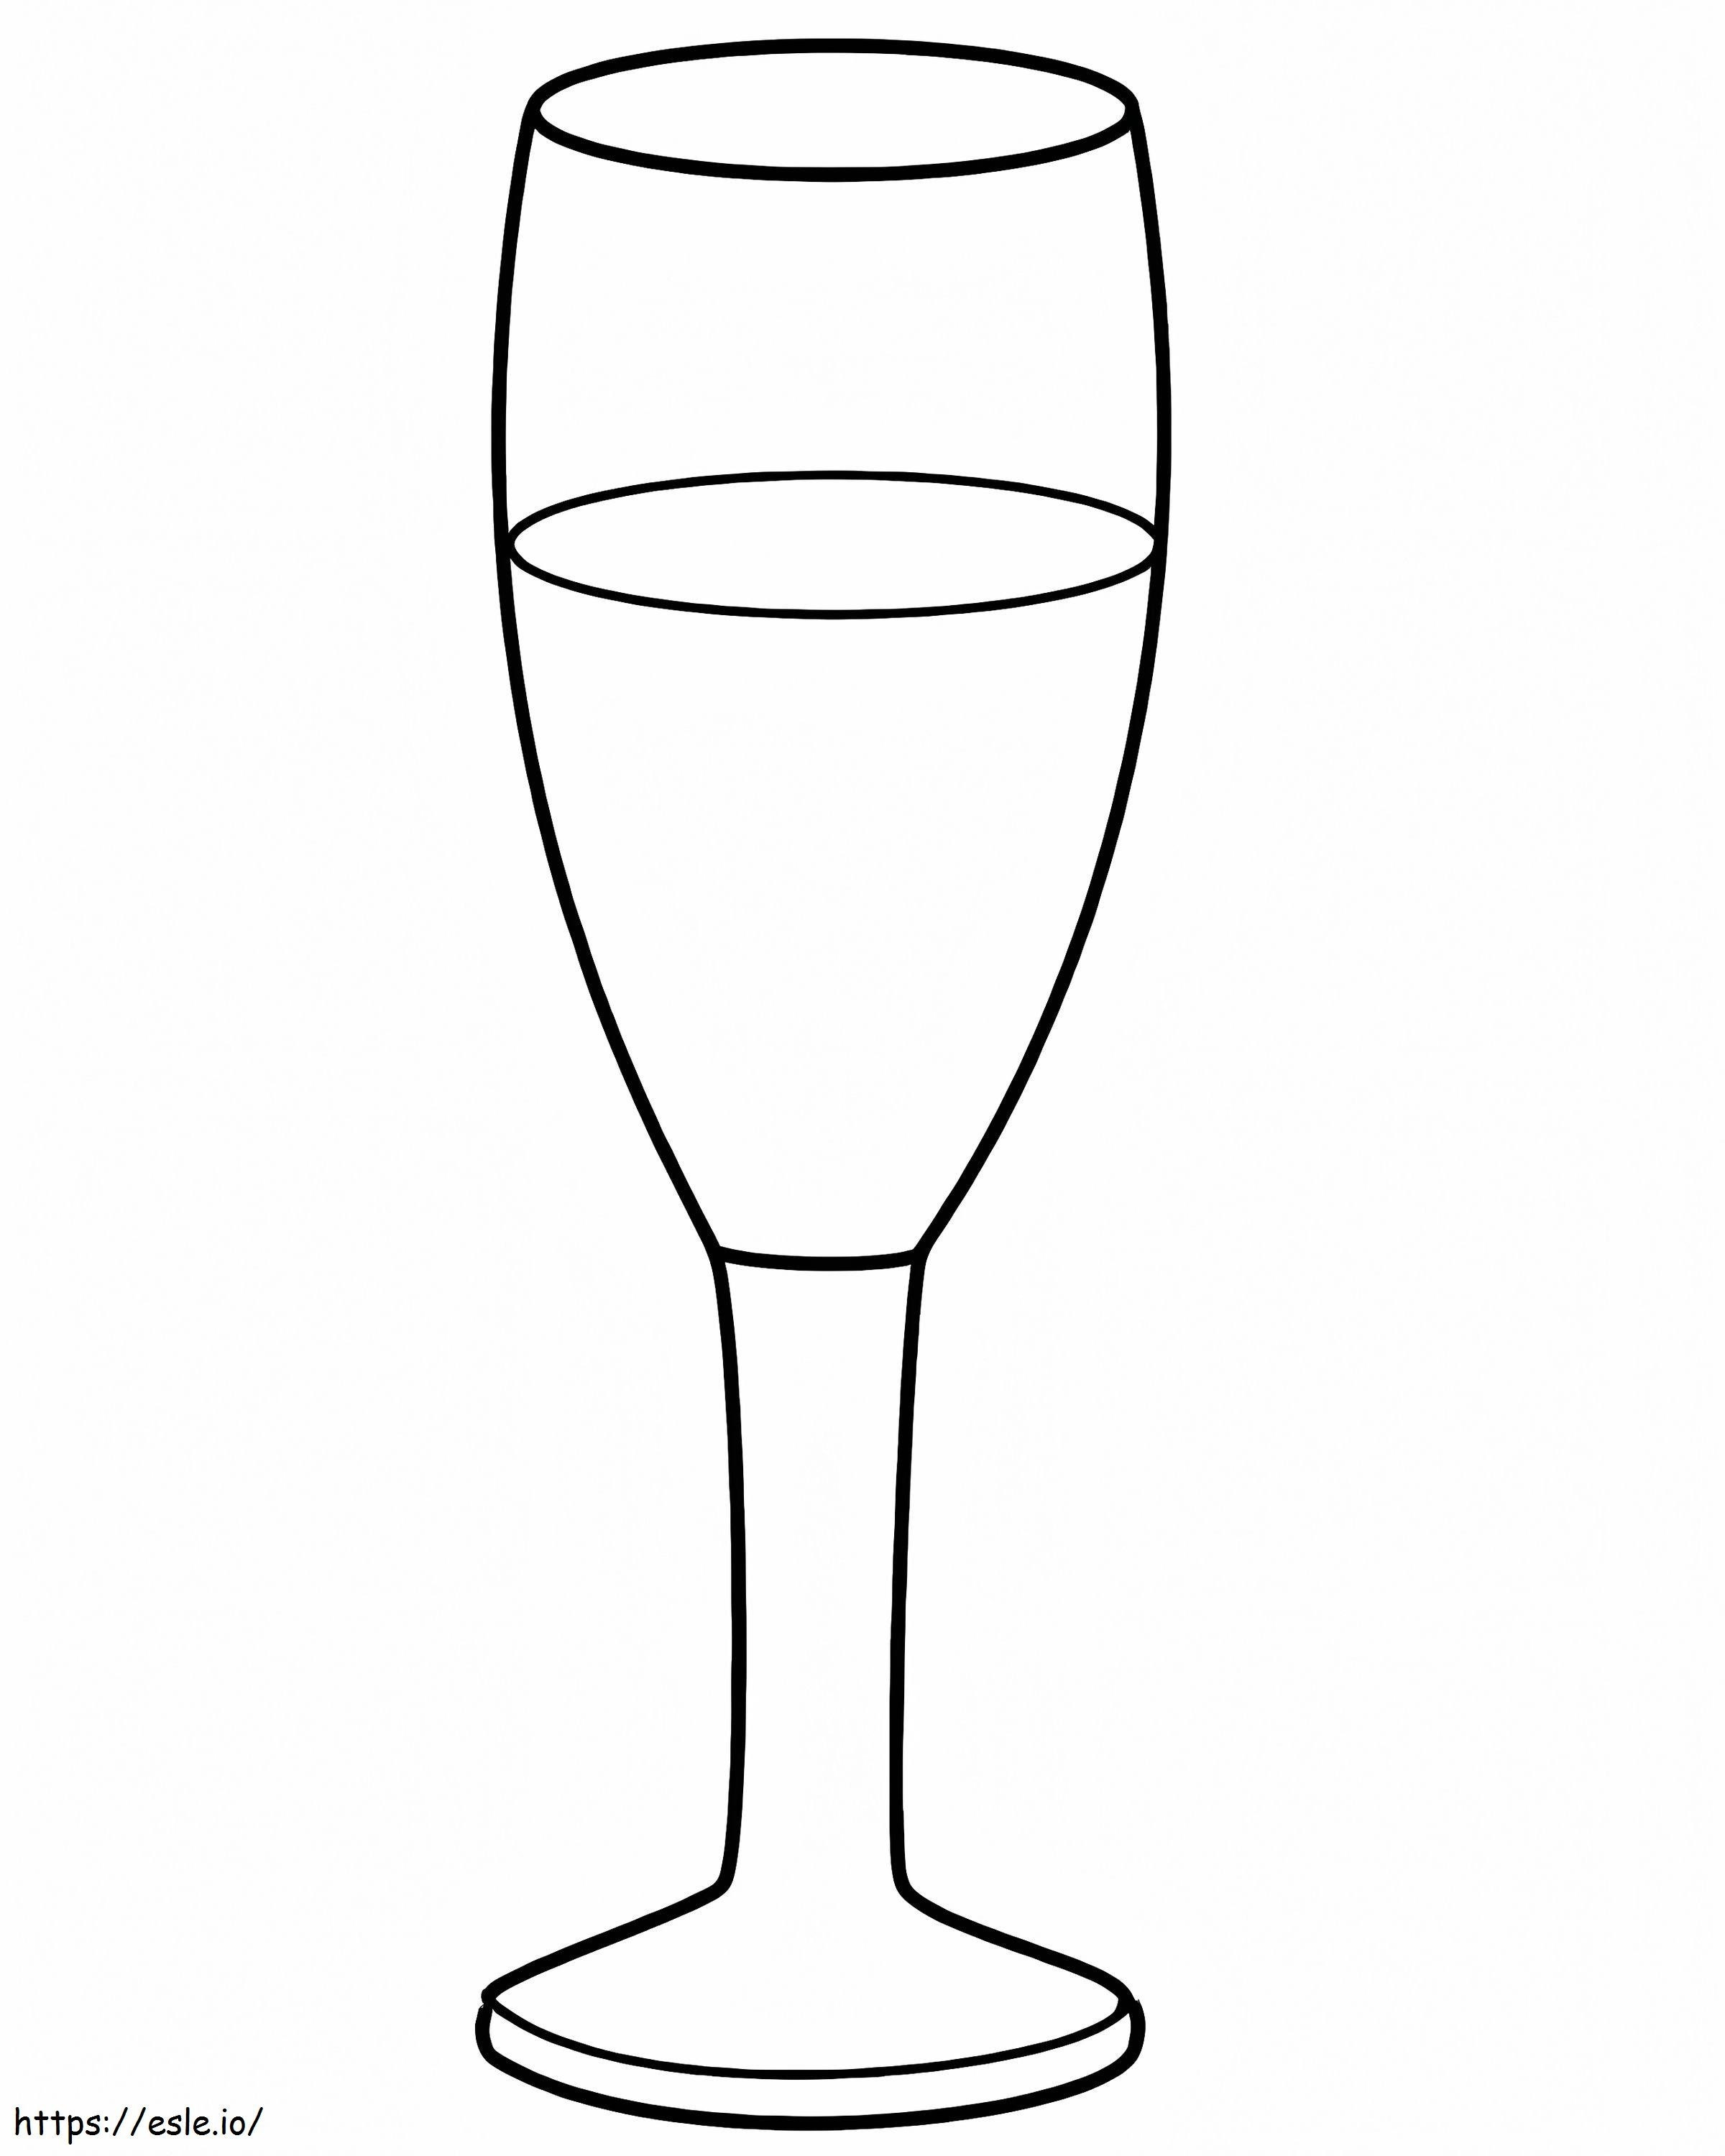 Copa de Champagne ausmalbilder